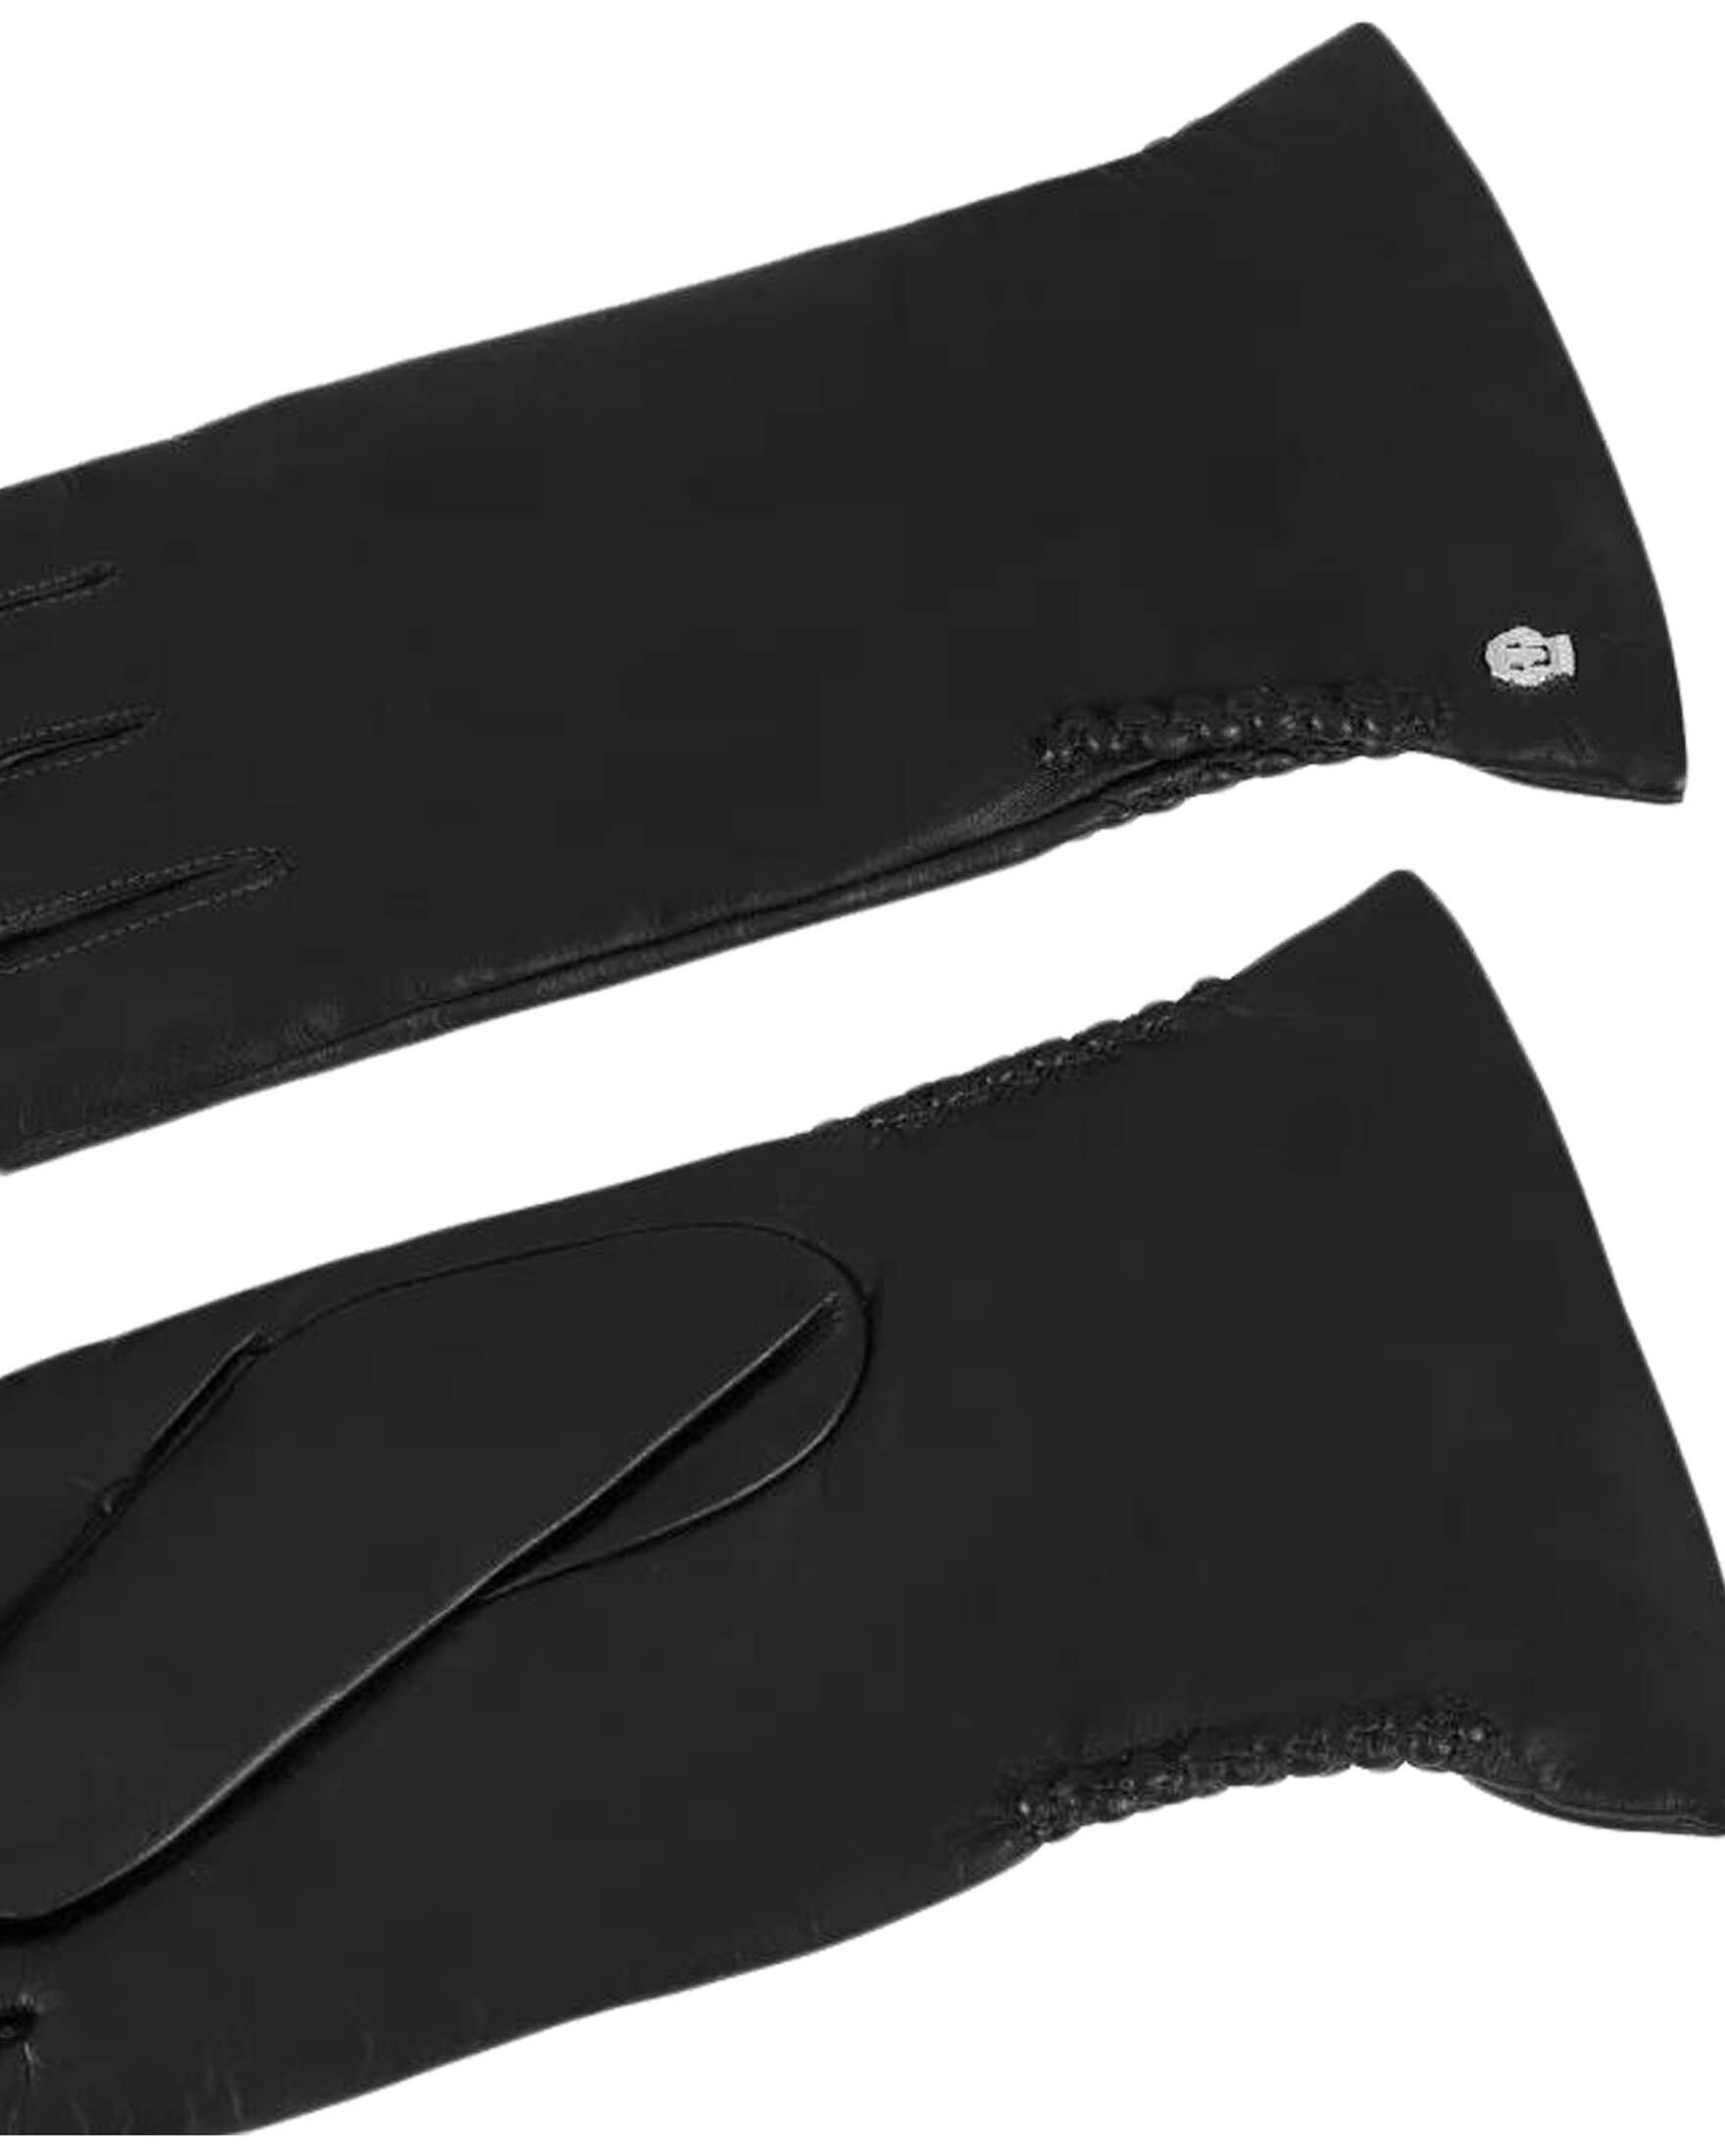 Lederhandschuhe Damen schwarz Roeckl Handschuhe (15) SPORTS